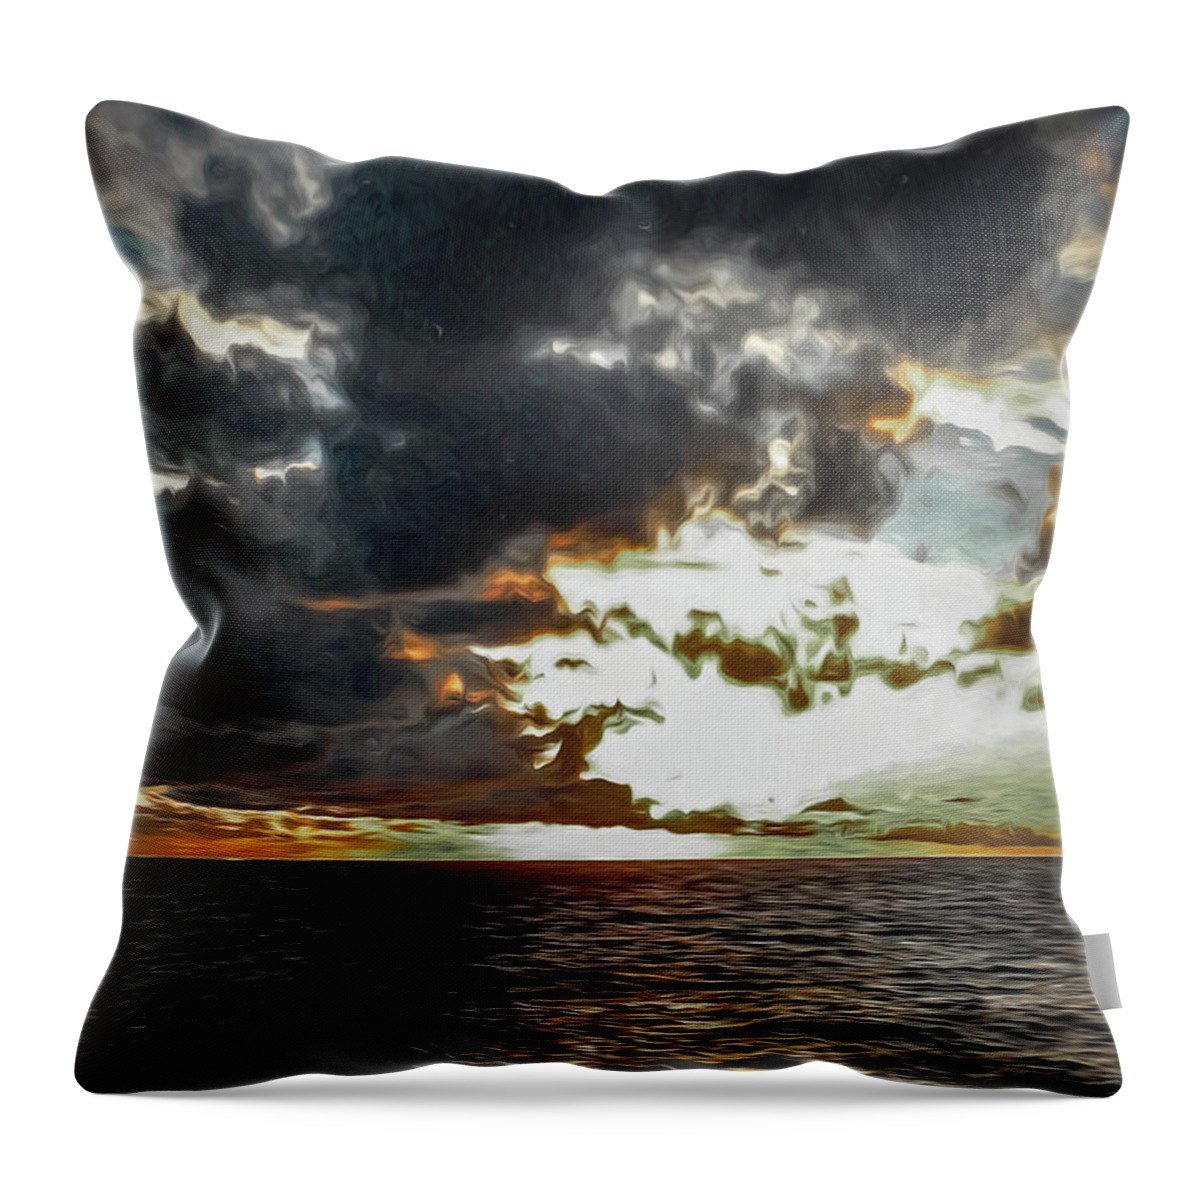 Fiji Throw Pillow featuring the photograph Fijian Sunset 3 by Stefan H Unger